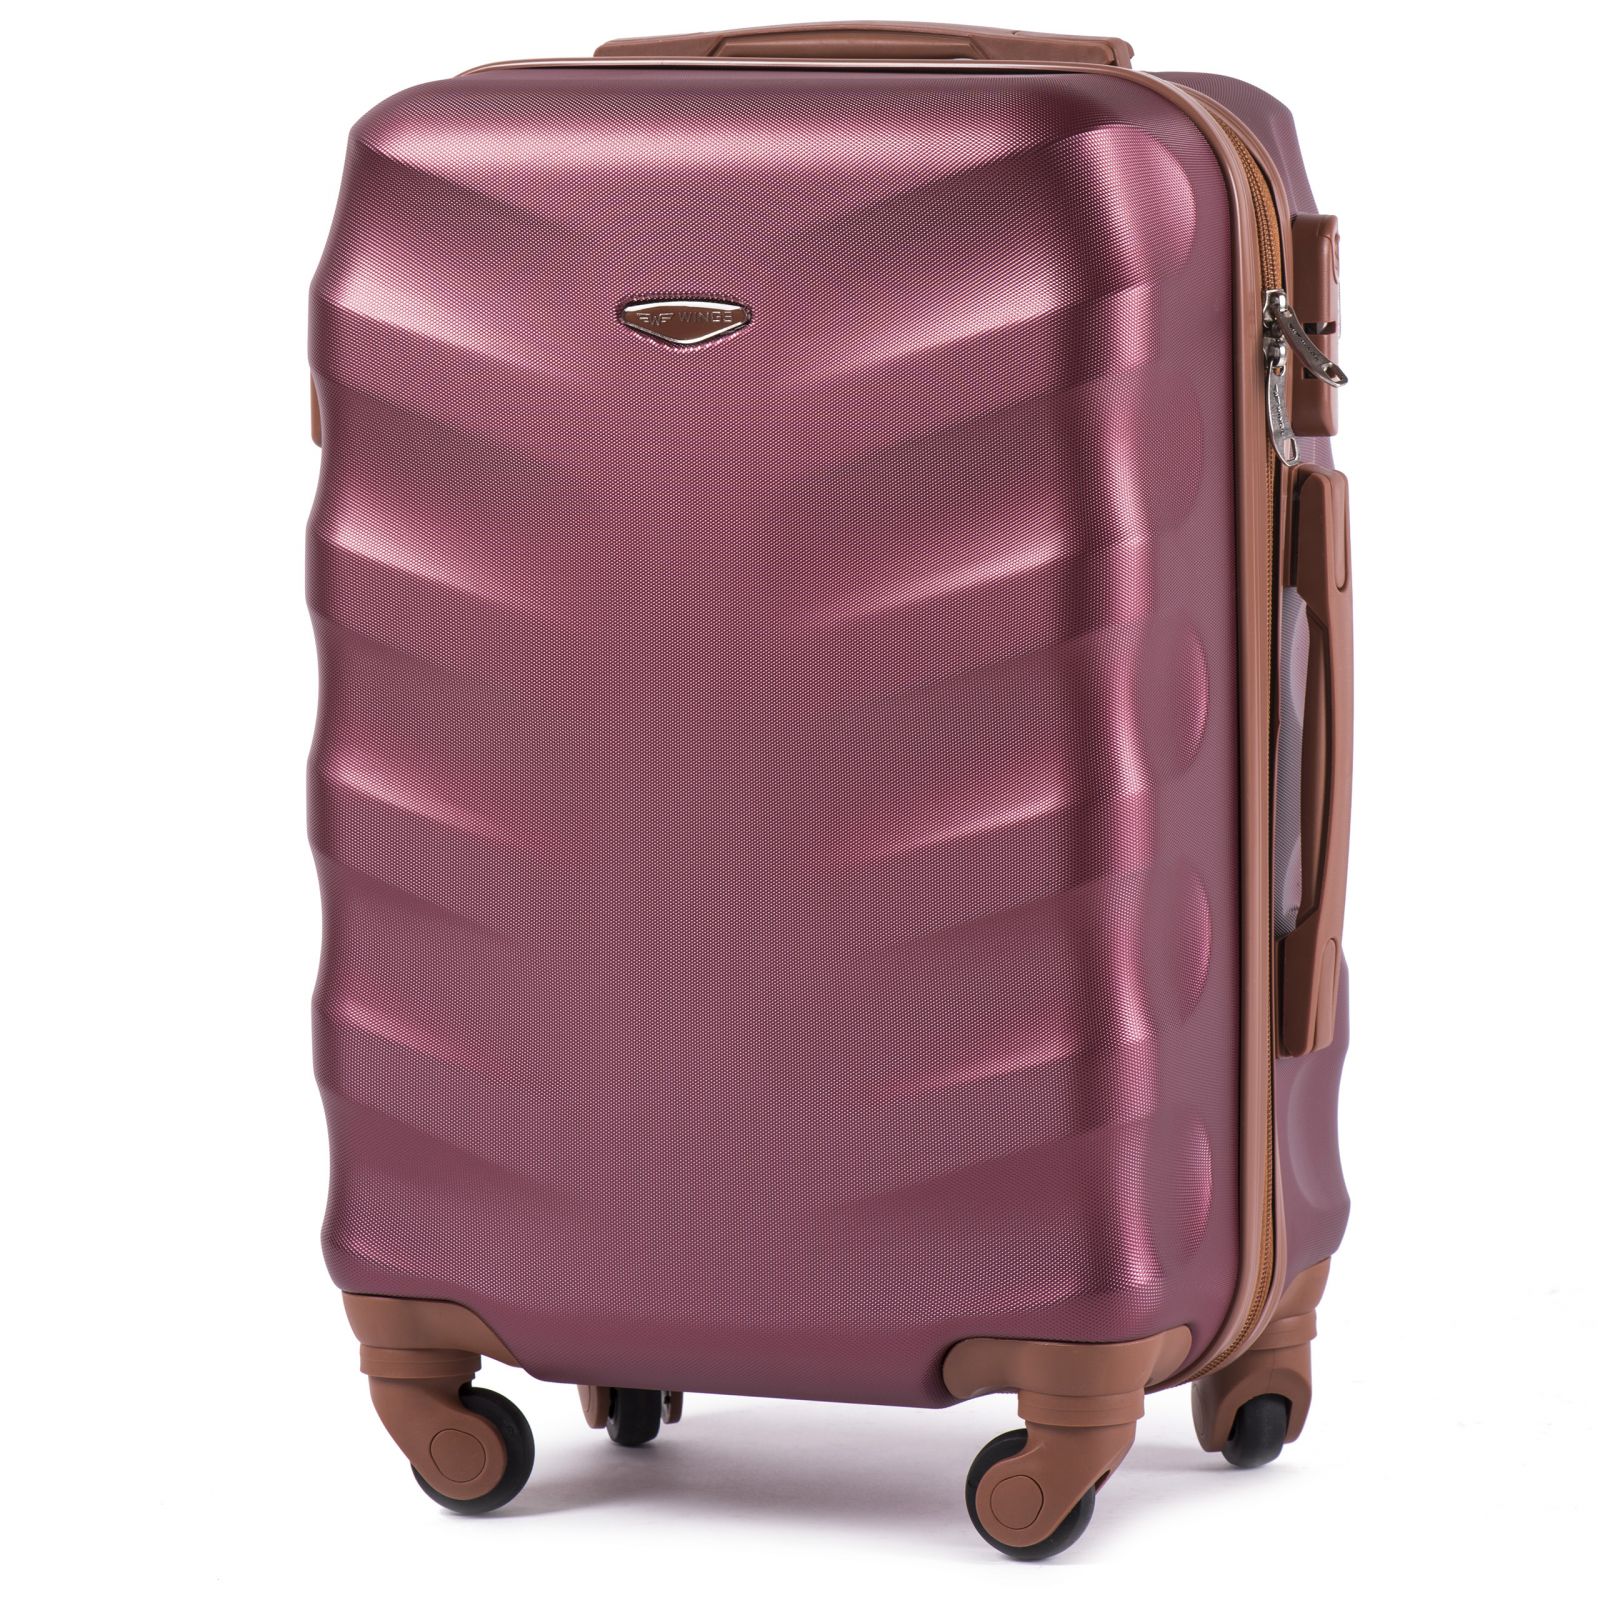 Cestovní kufr WINGS 402 ABS WINE RED malý S E-batoh